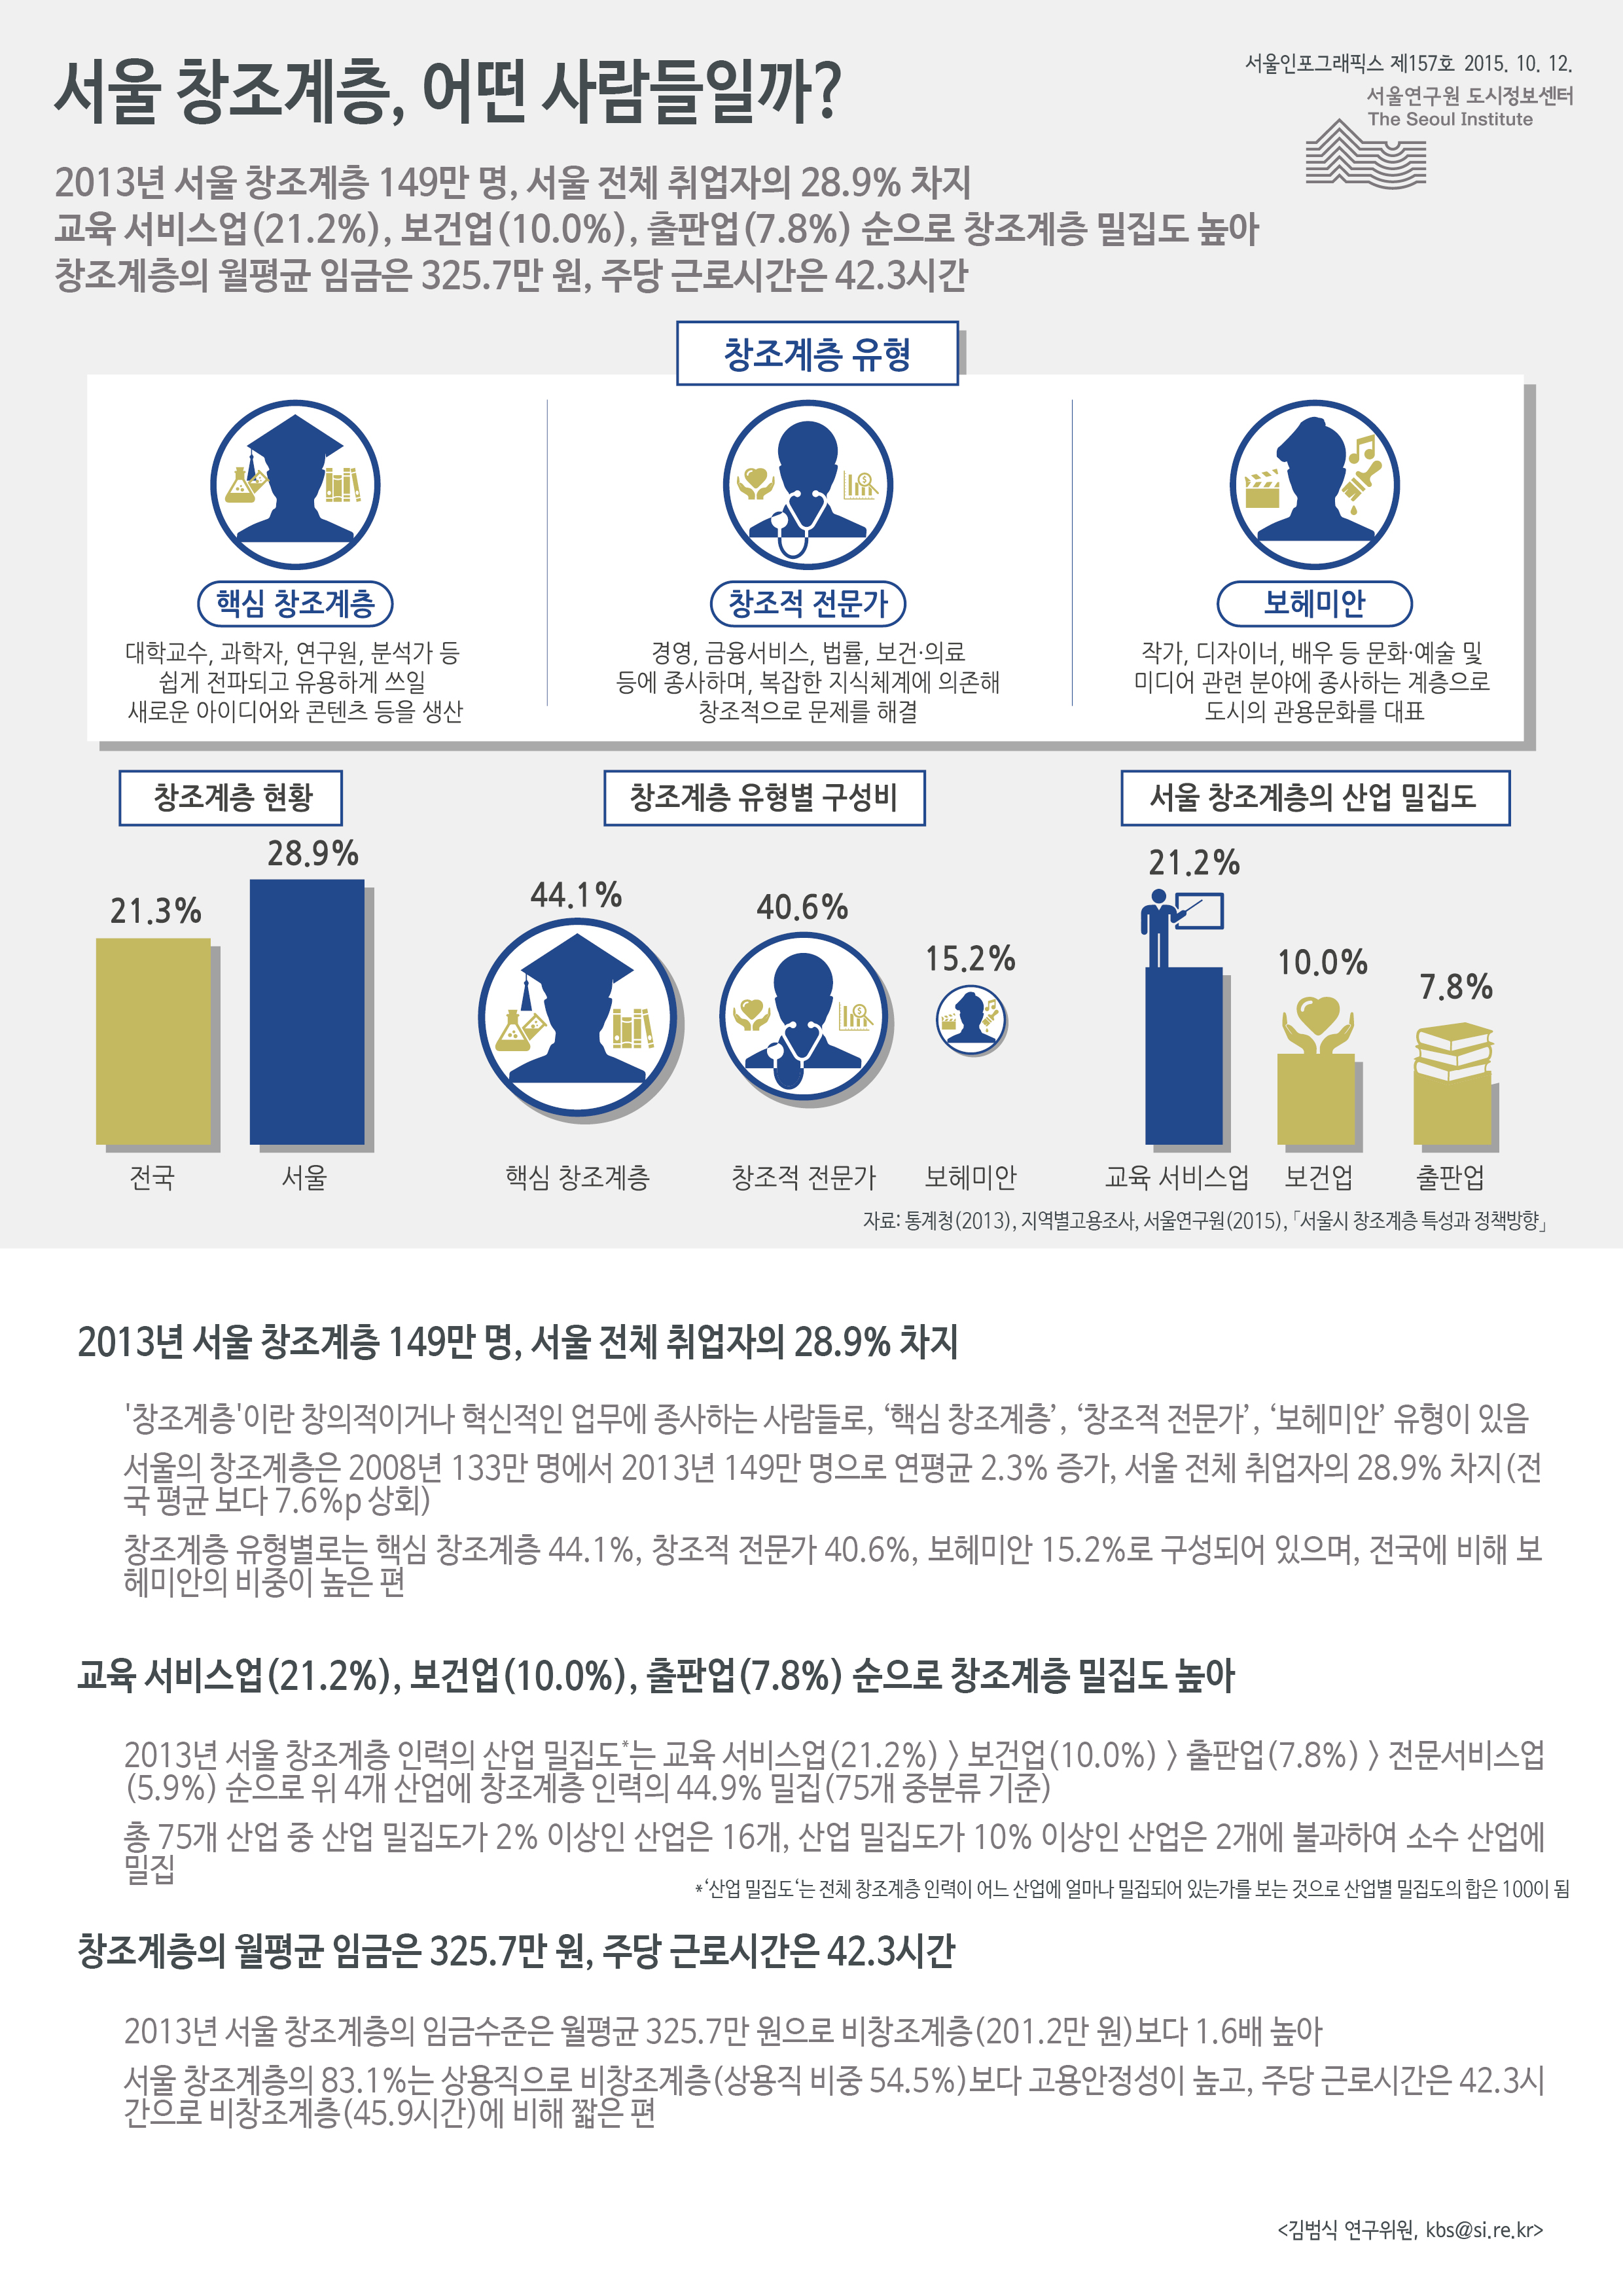 서울 창조계층, 어떤 사람들일까? 서울인포그래픽스 제 157호 2015년 10월 12일 2013년 서울 창조계층 149만 명, 서울 전체 취업자의 28.9% 차지. 교육 서비스업(21.2%), 보건업(10.0%), 출판업(7.8%) 순으로 창조계층 밀집도 높음. 창조계층의 월평균 임금은 325.7만 원, 주당 근로시간은 42.3시간으로 정리될 수 있습니다. 인포그래픽으로 제공되는 그래픽은 하단에 표로 자세히 제공됩니다.